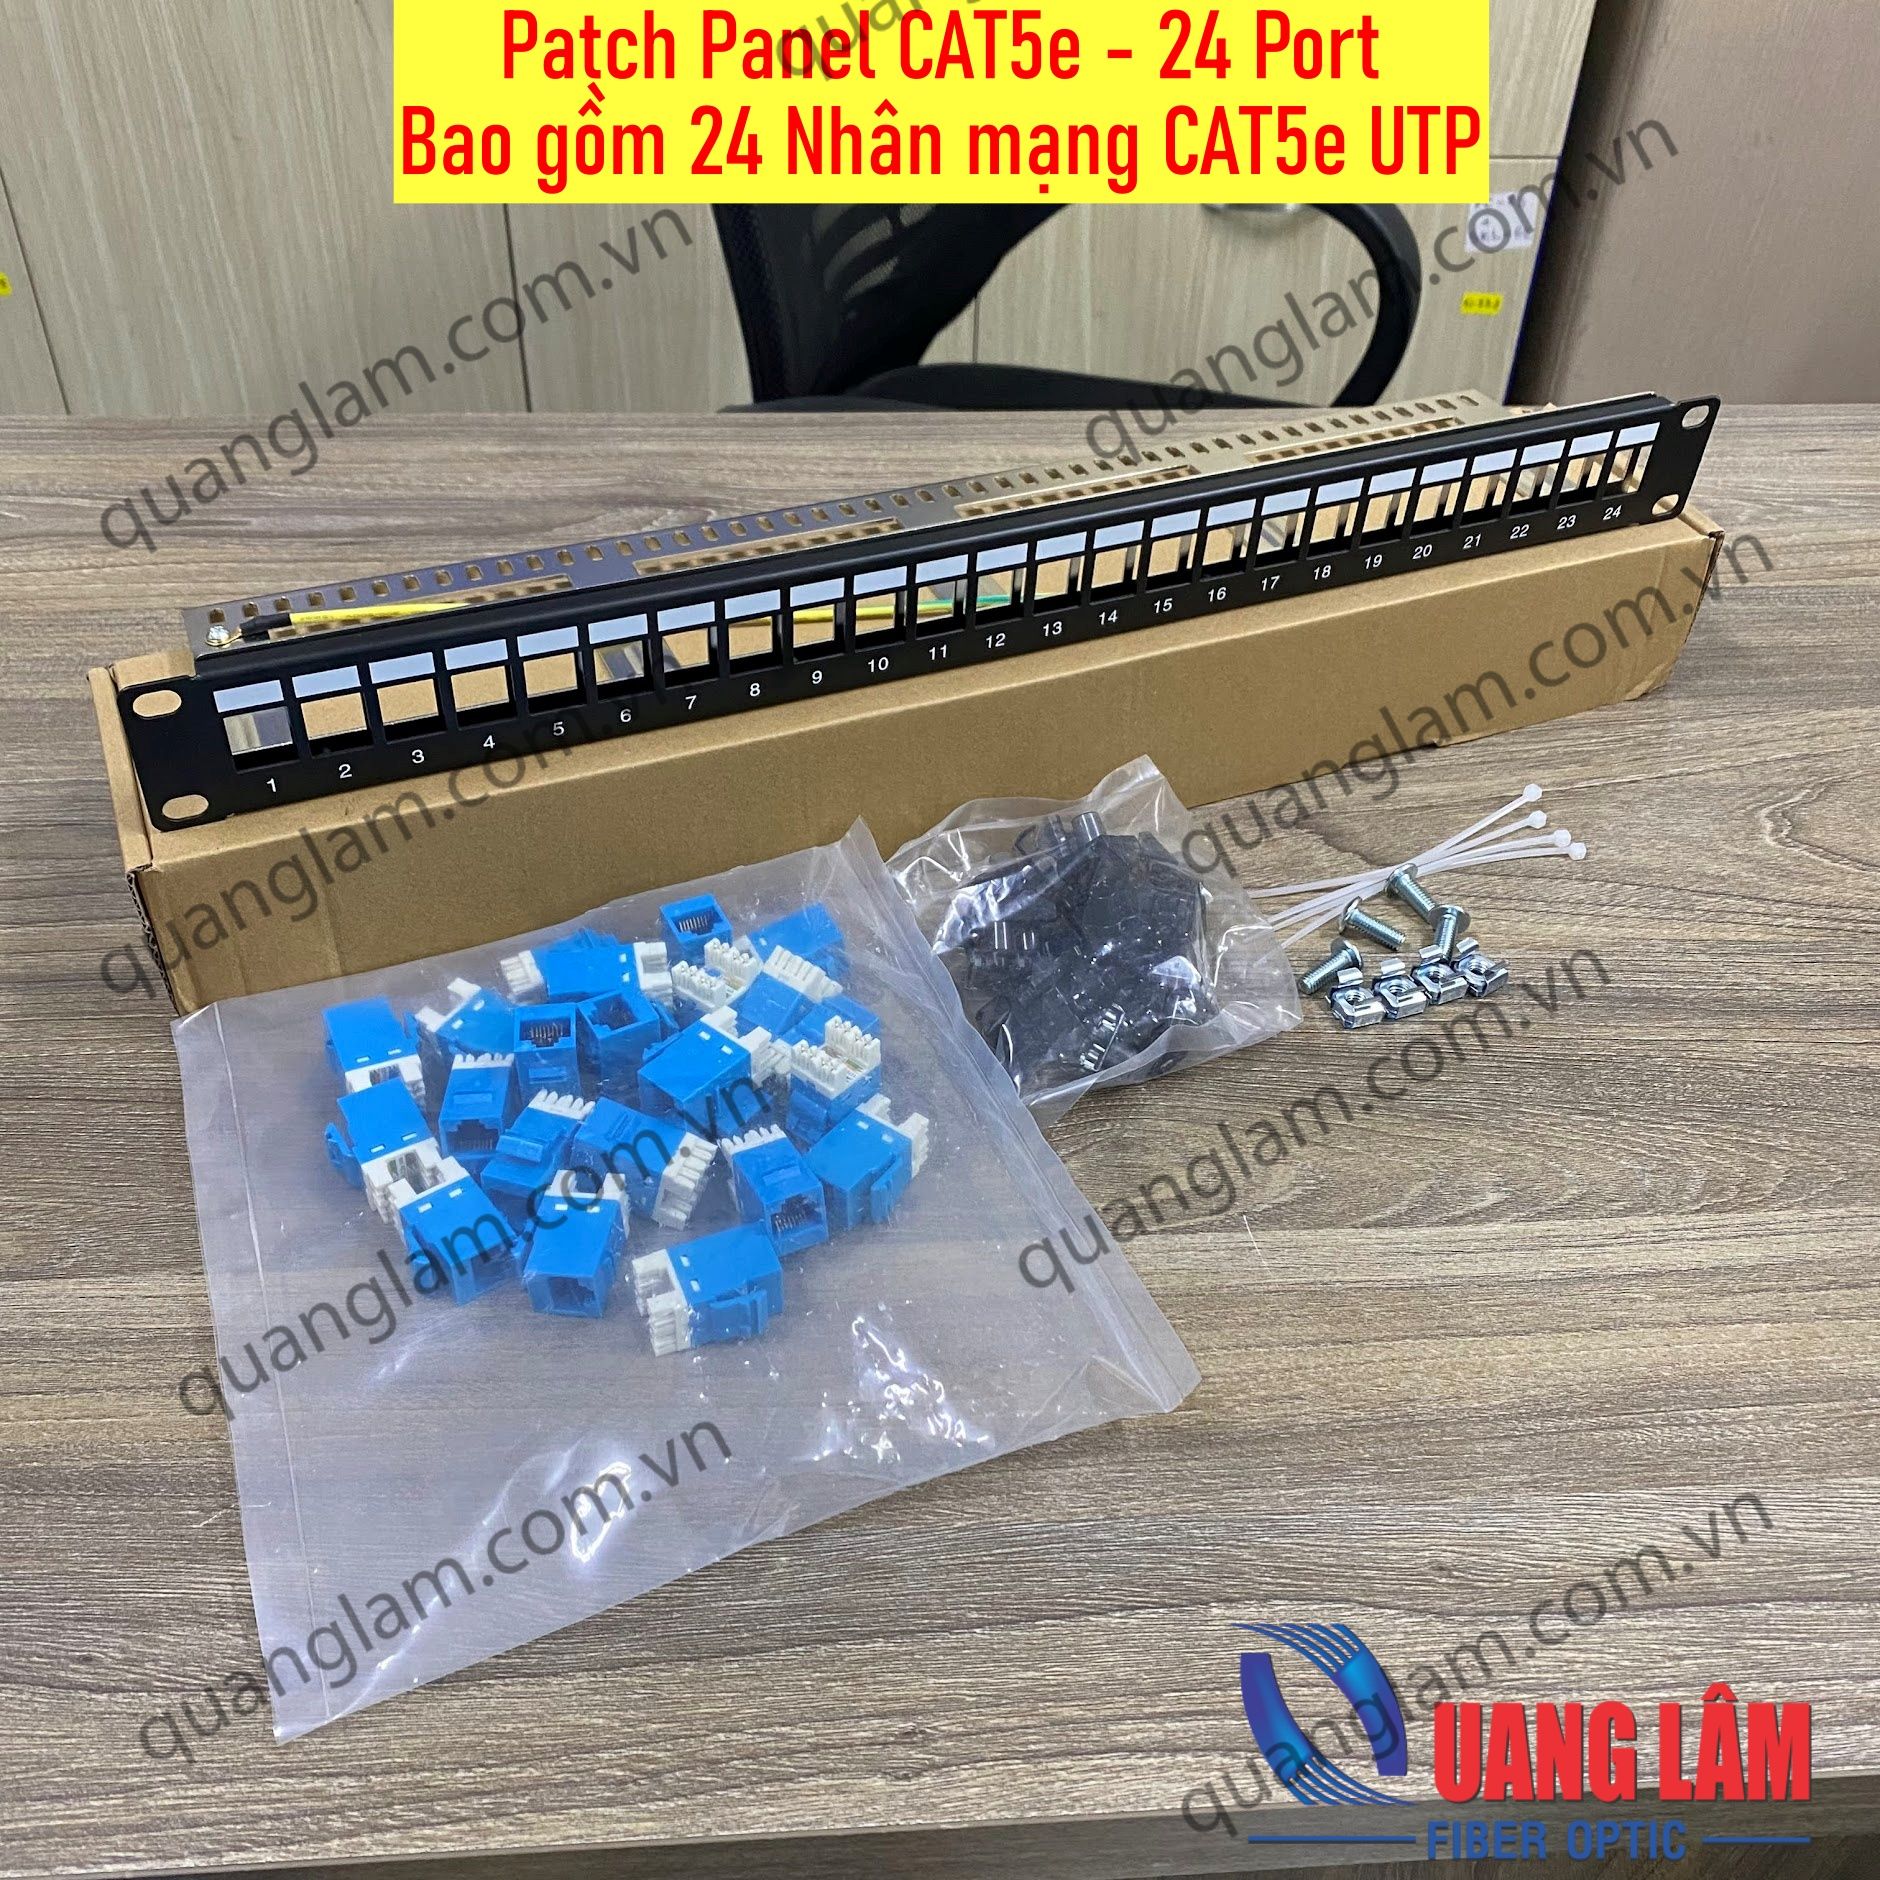 Patch Panel CAT5e 24Port UTP (Bao gồm 24 Nhân mạng CAT5e UTP màu xanh)